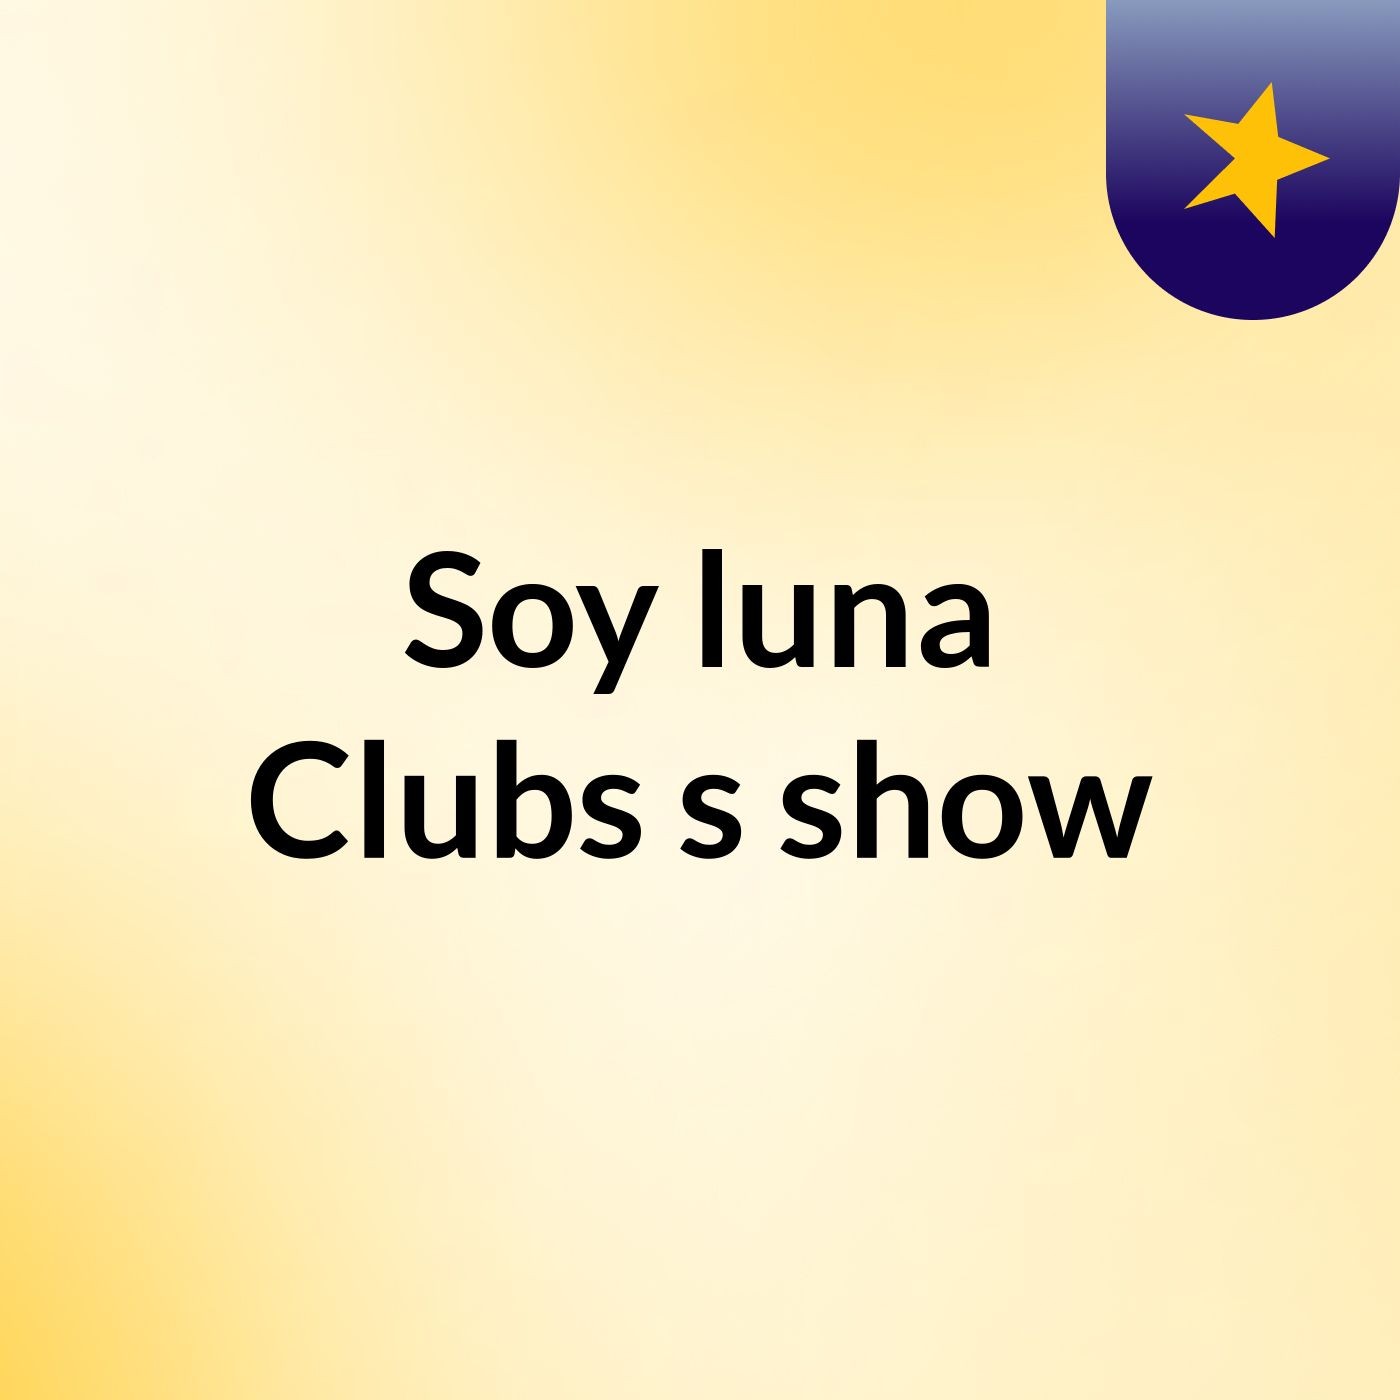 Soy luna Clubs's show